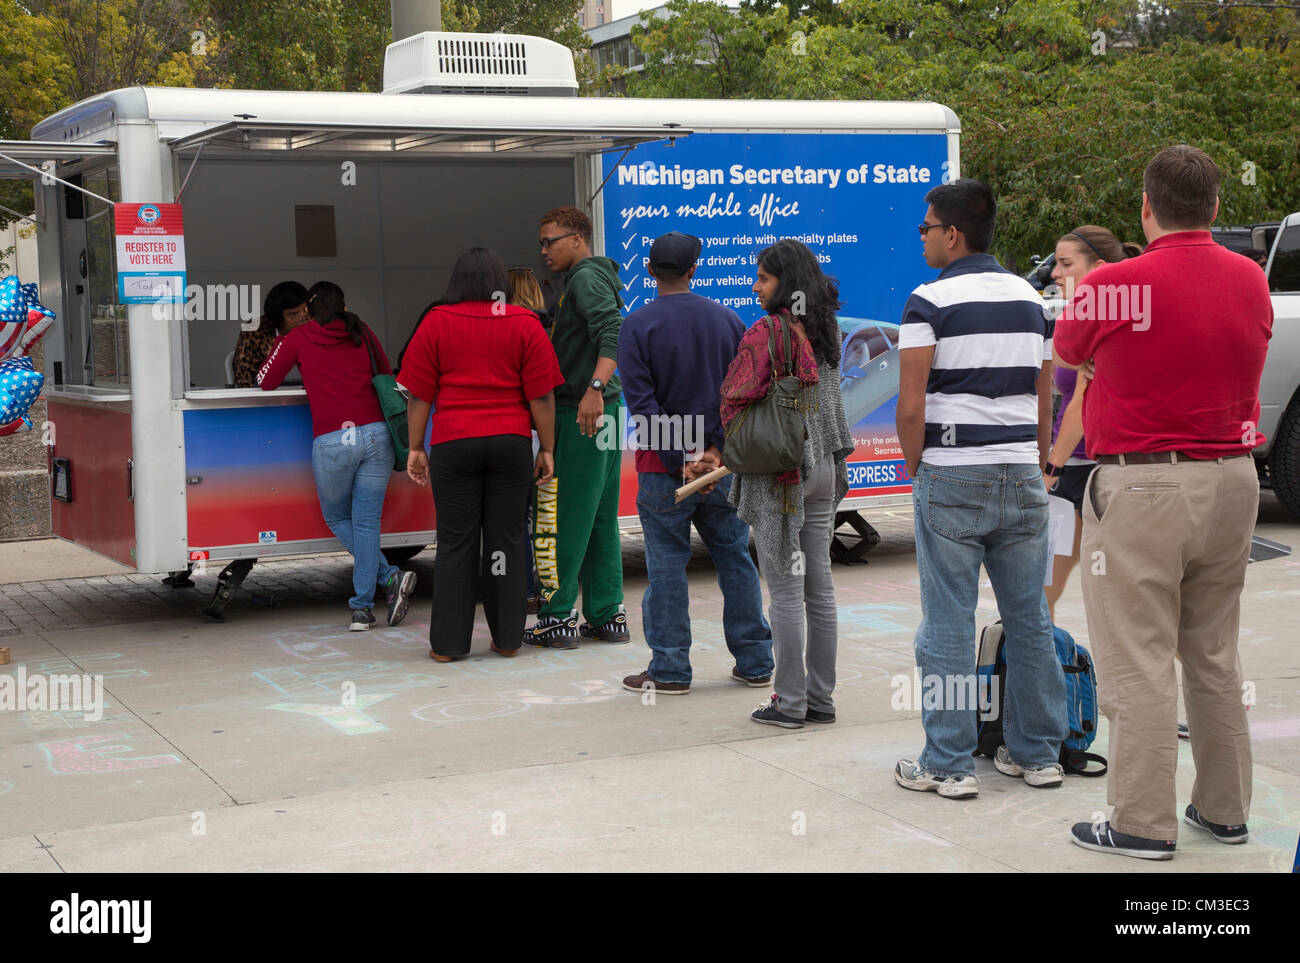 Detroit, Michigan - Studenti presso la Wayne State University la linea fino a registrarsi per votare nel novembre 2012 elezioni presidenziali. La campagna di registrazione è stato sponsorizzato dalla Michigan il Segretario di Stato e il NAACP Michigan. Foto Stock